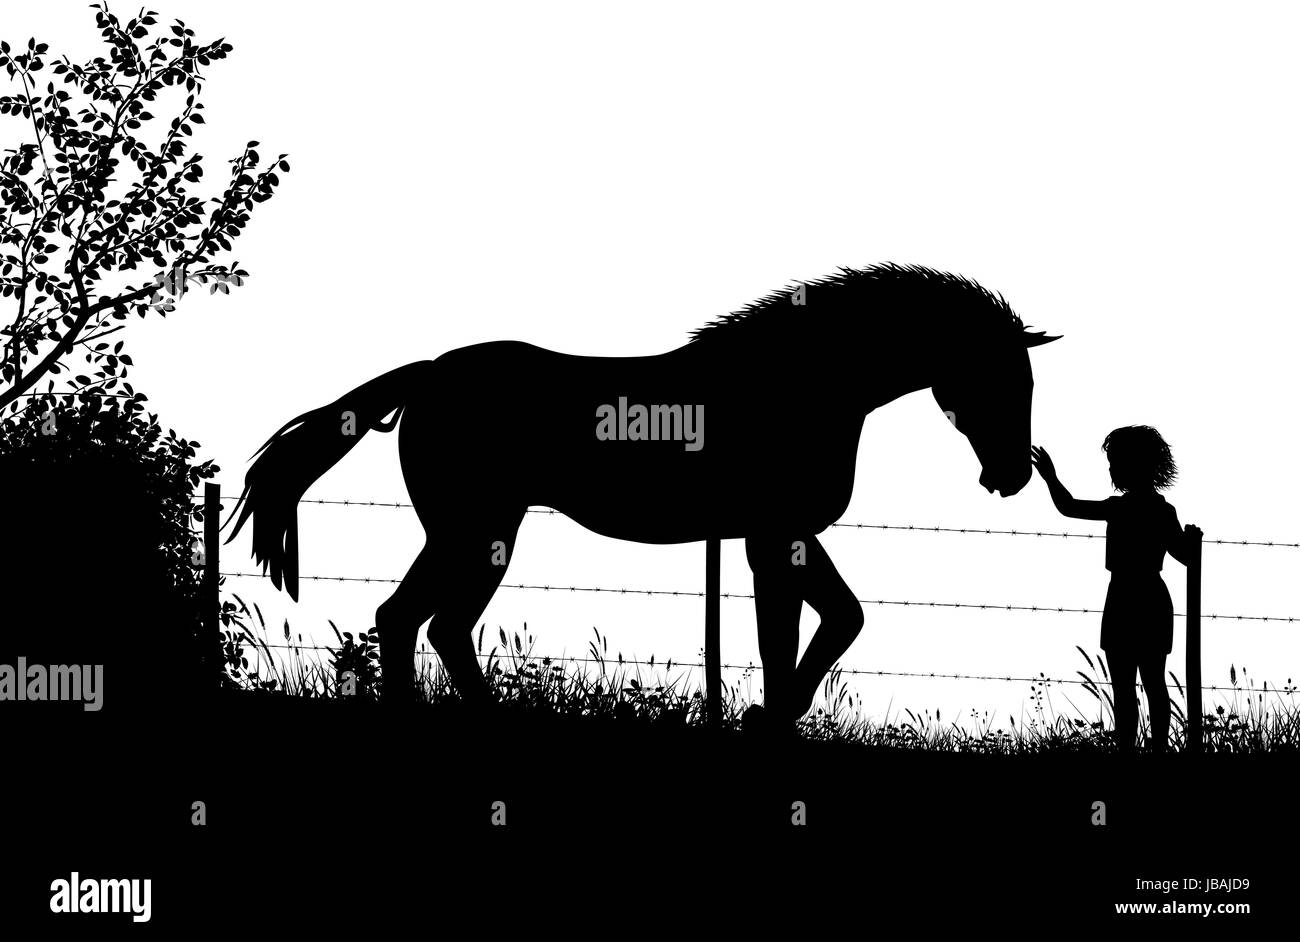 Bearbeitbares Vektor Silhouette eines jungen Mädchens streicheln ein Pferd in einem Feld mit Zahlen als separate Objekte Stock Vektor